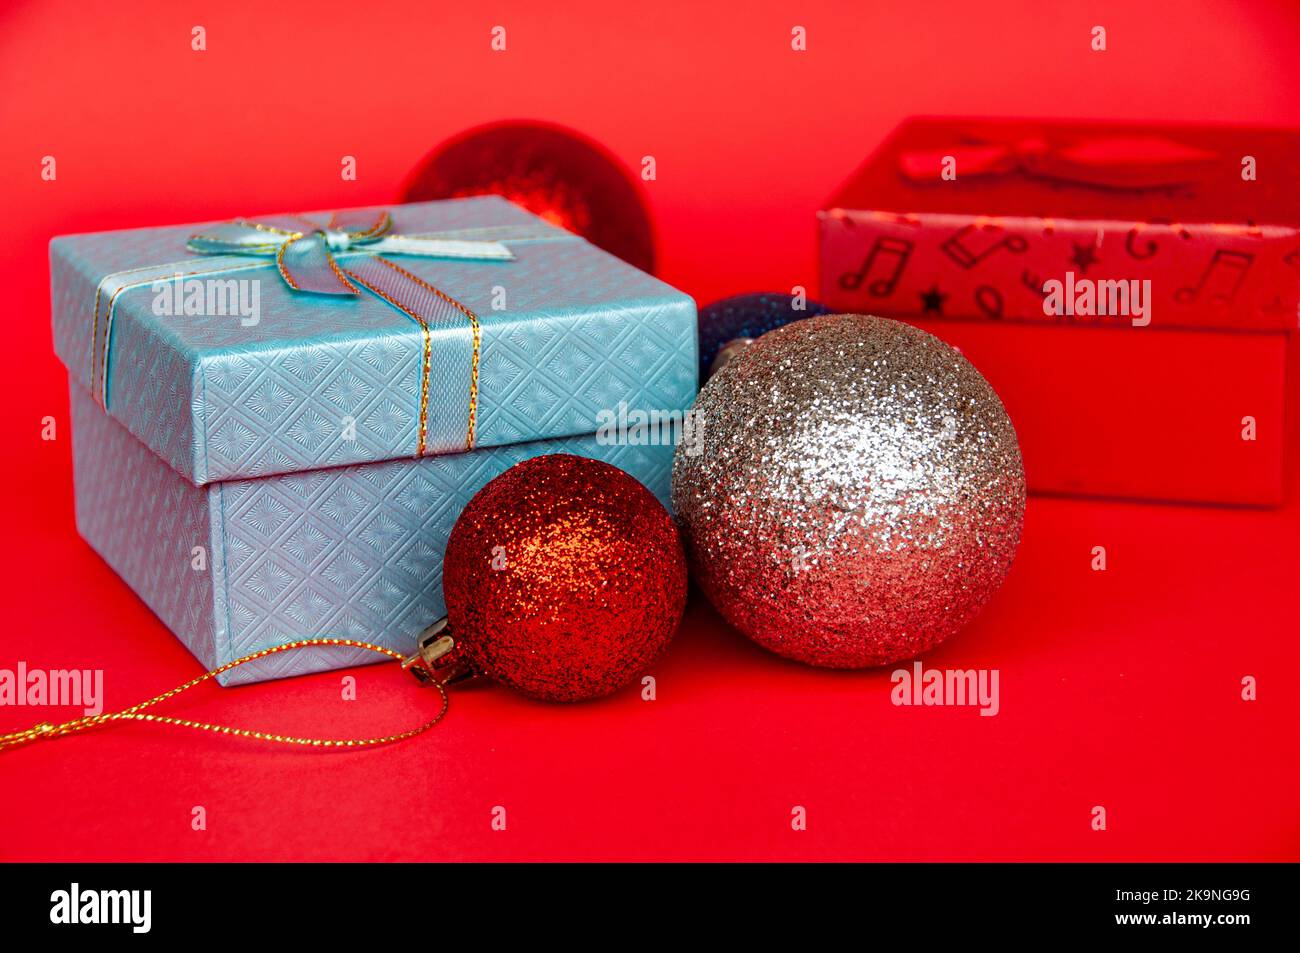 Geschenke und Weihnachtskugel auf rotem Cover Hintergrund. Weihnachtsgeschenk und Copy Space Konzept. Stockfoto